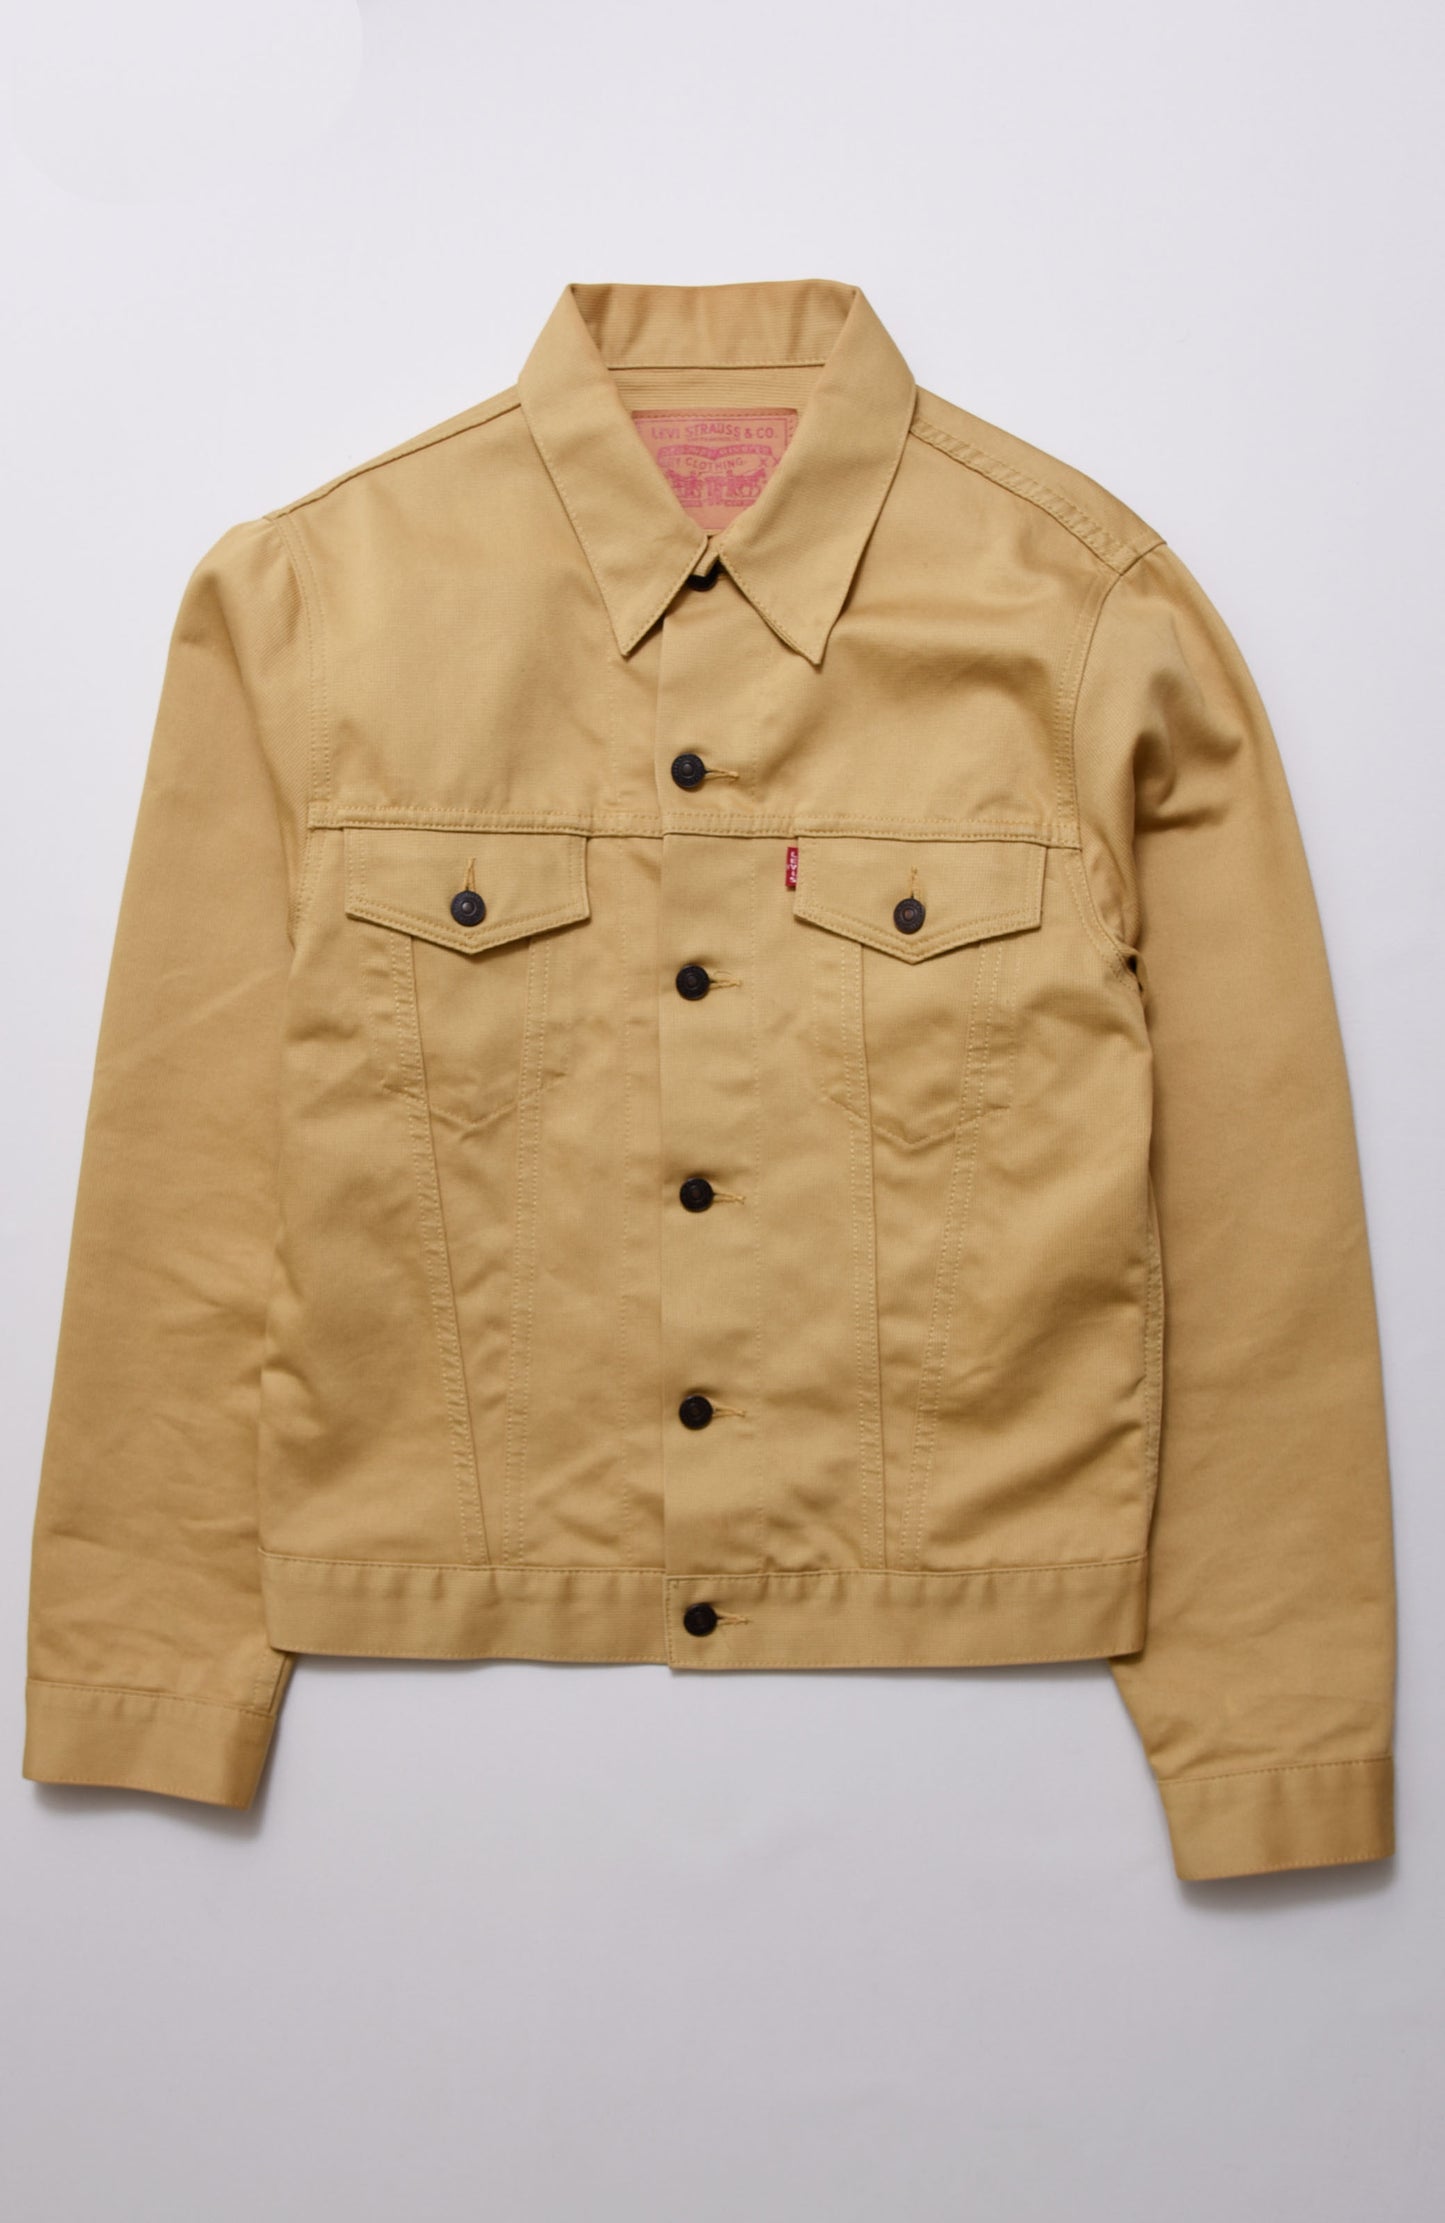 CottonPique Jacket｜1990s